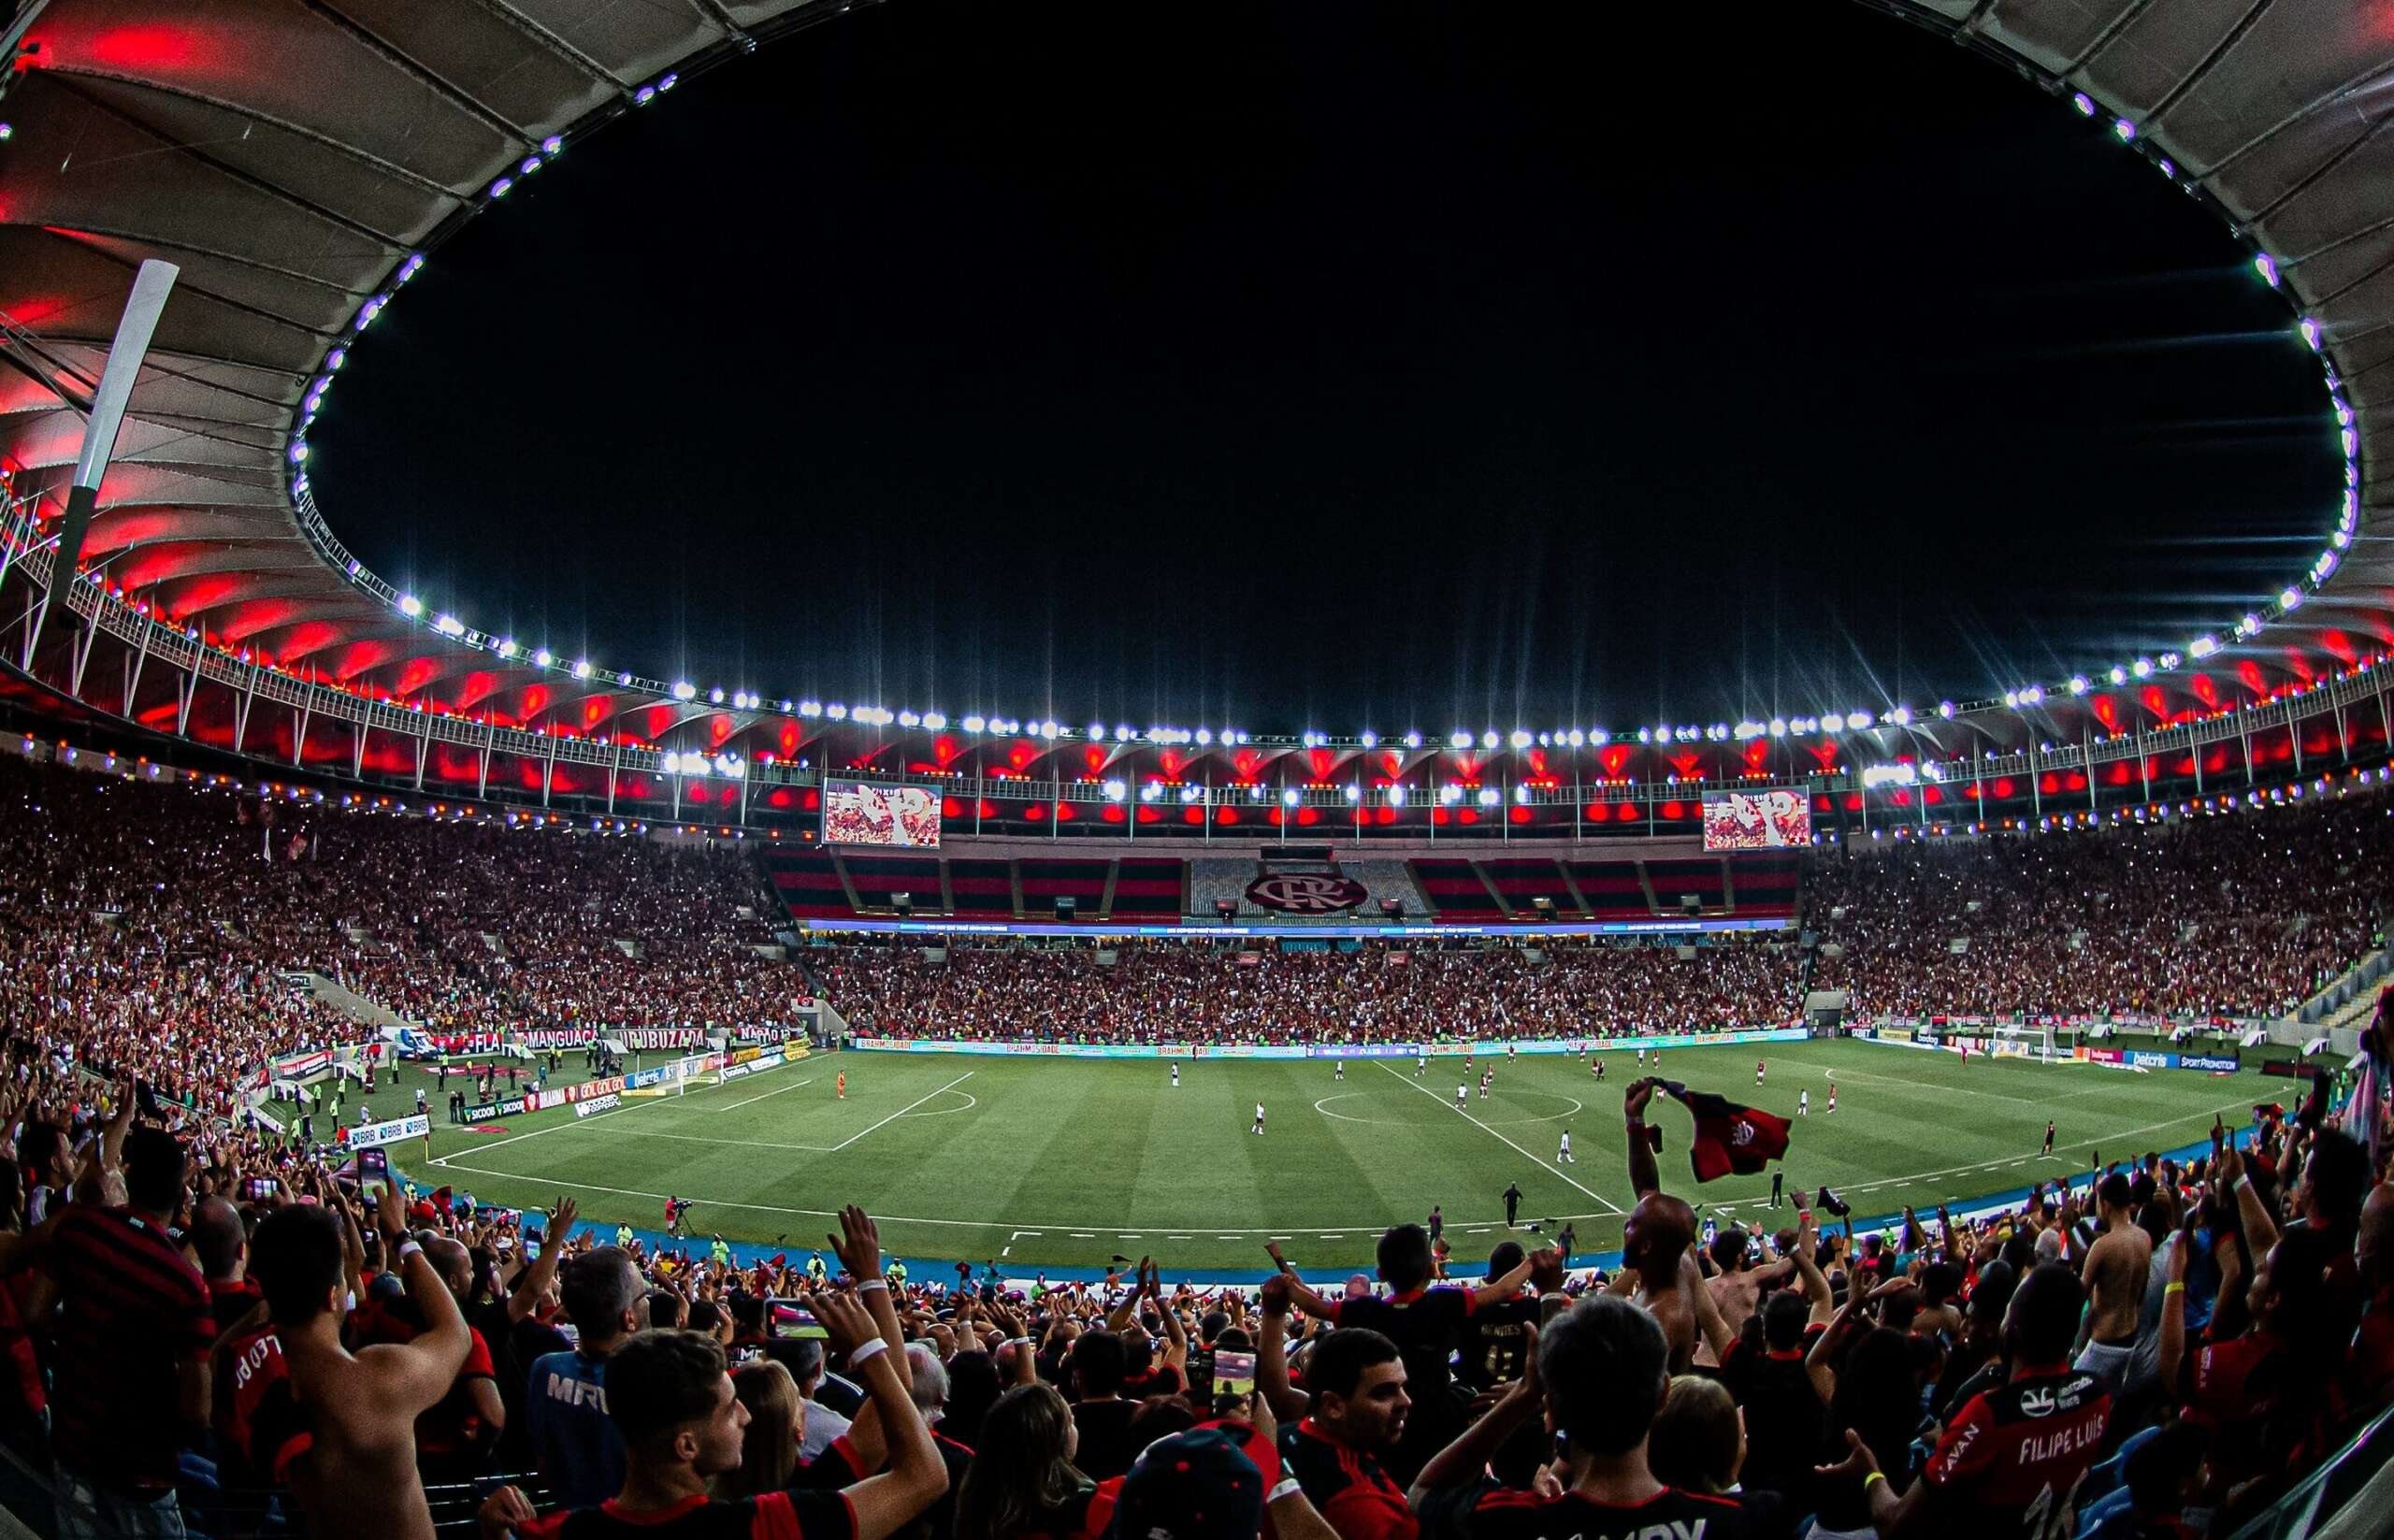 Futebol Jogos Bangu VS Flamengo Campeonato jogo.zip em 2023